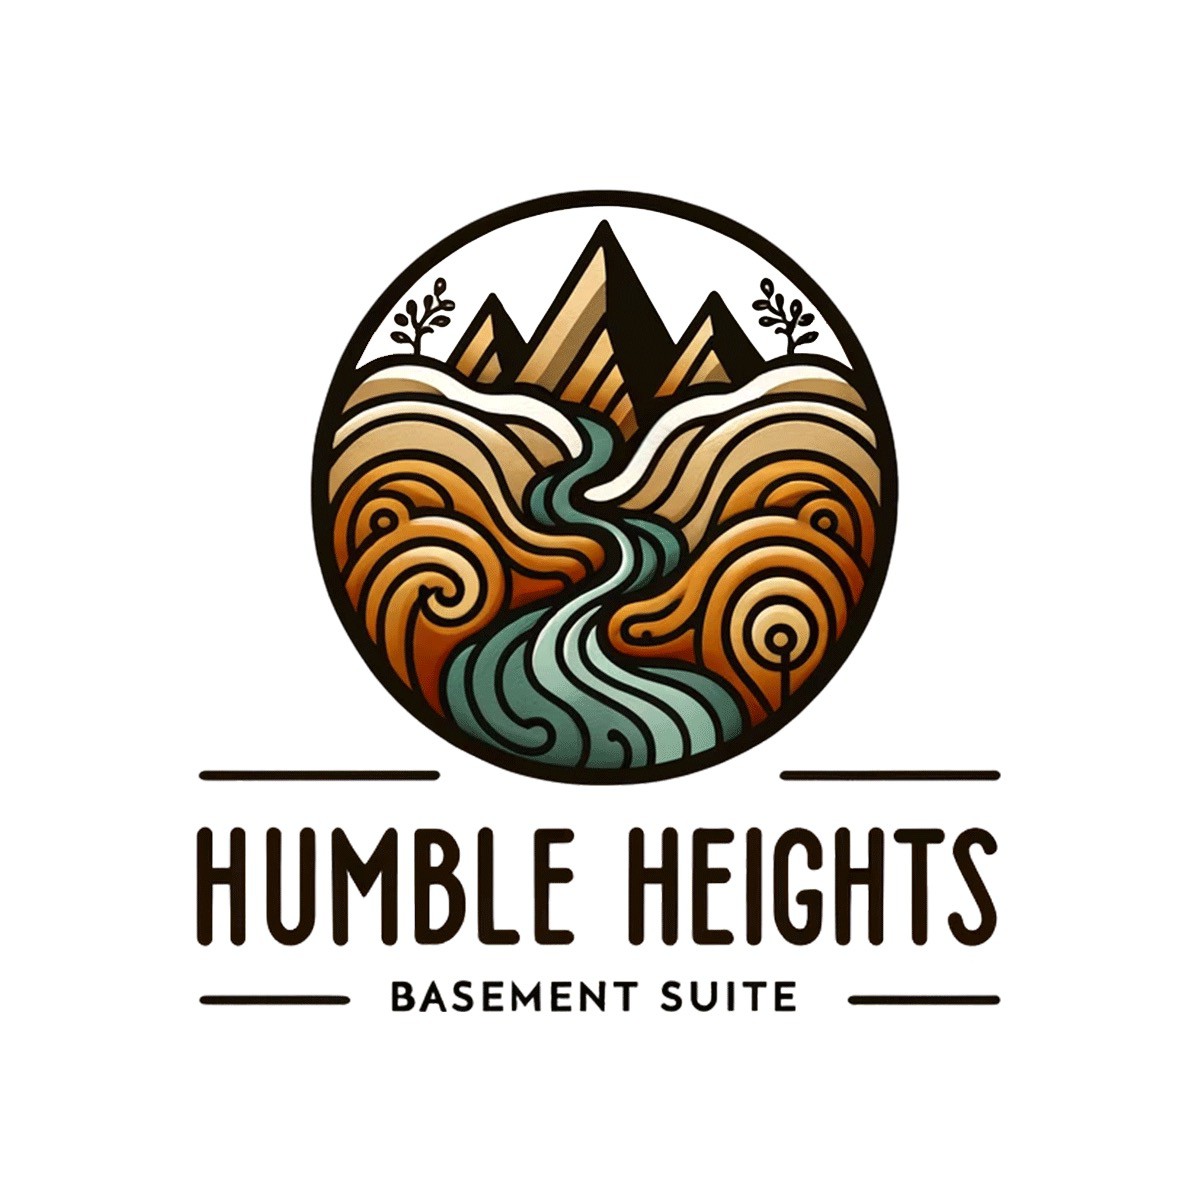 Humble Heights地下室套房